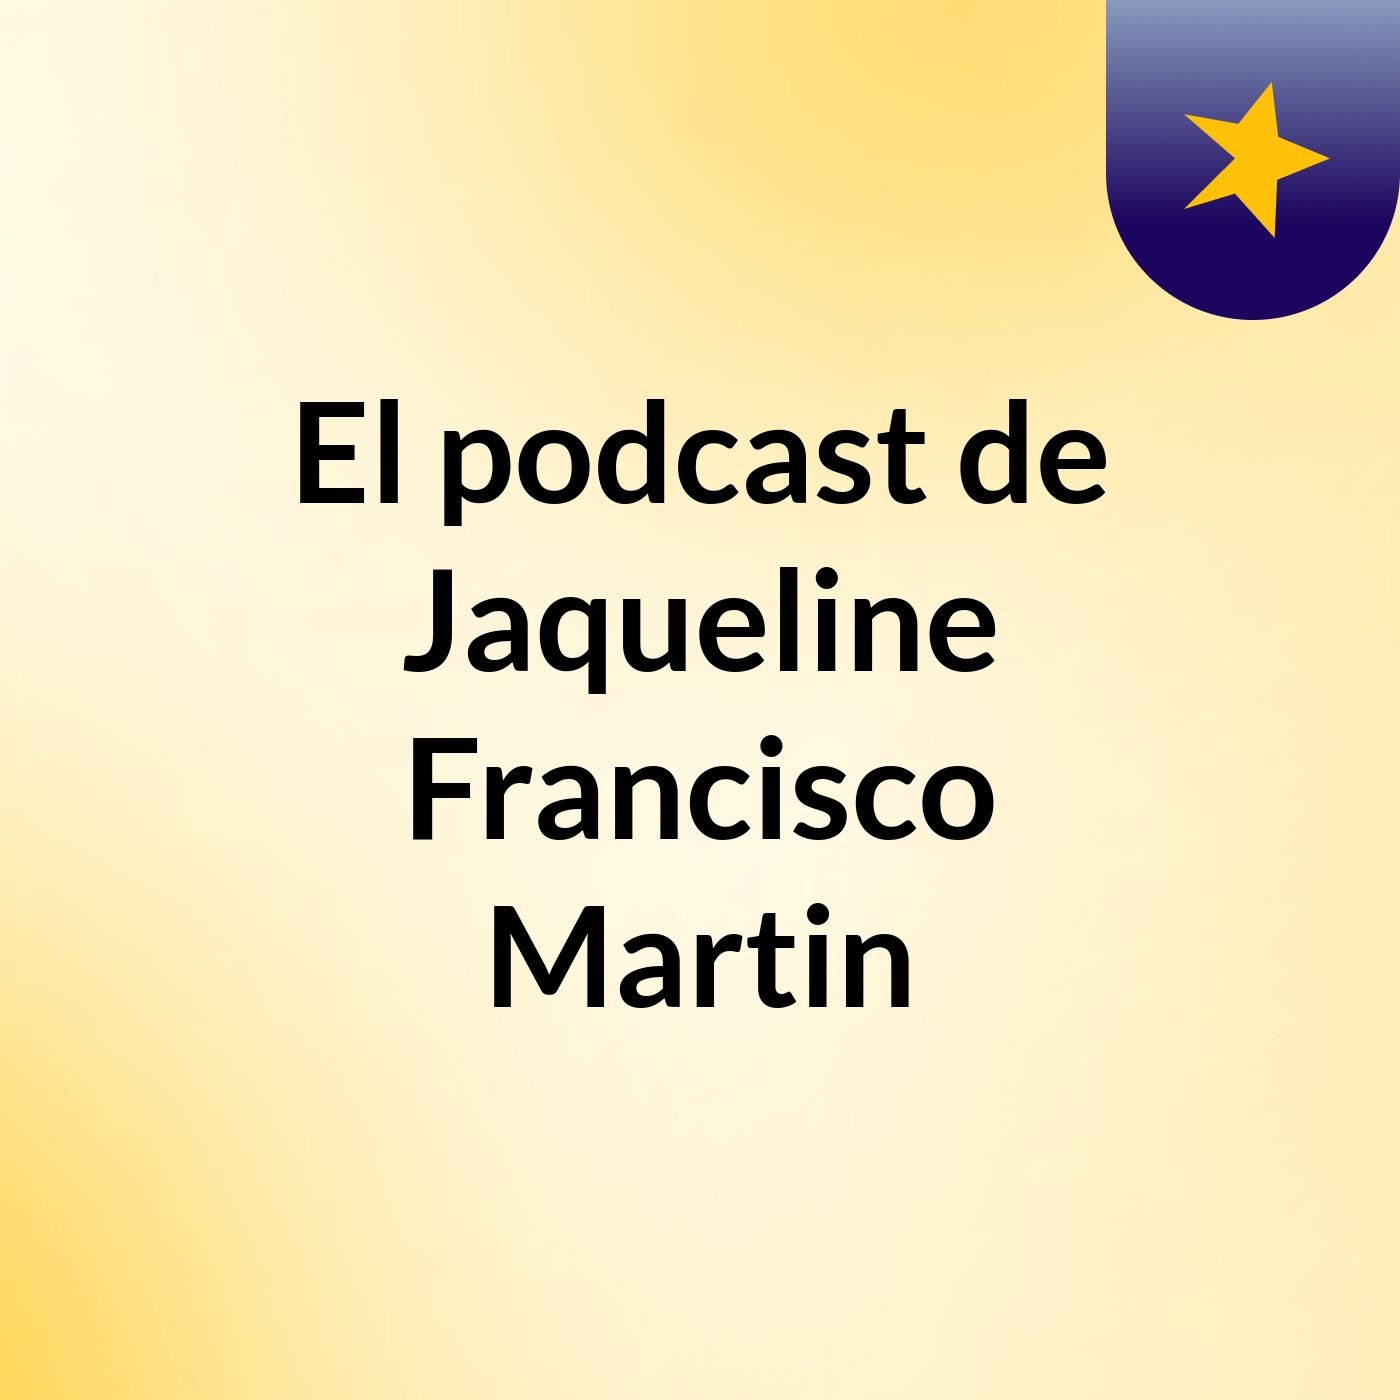 El podcast de Jaqueline Francisco Martin